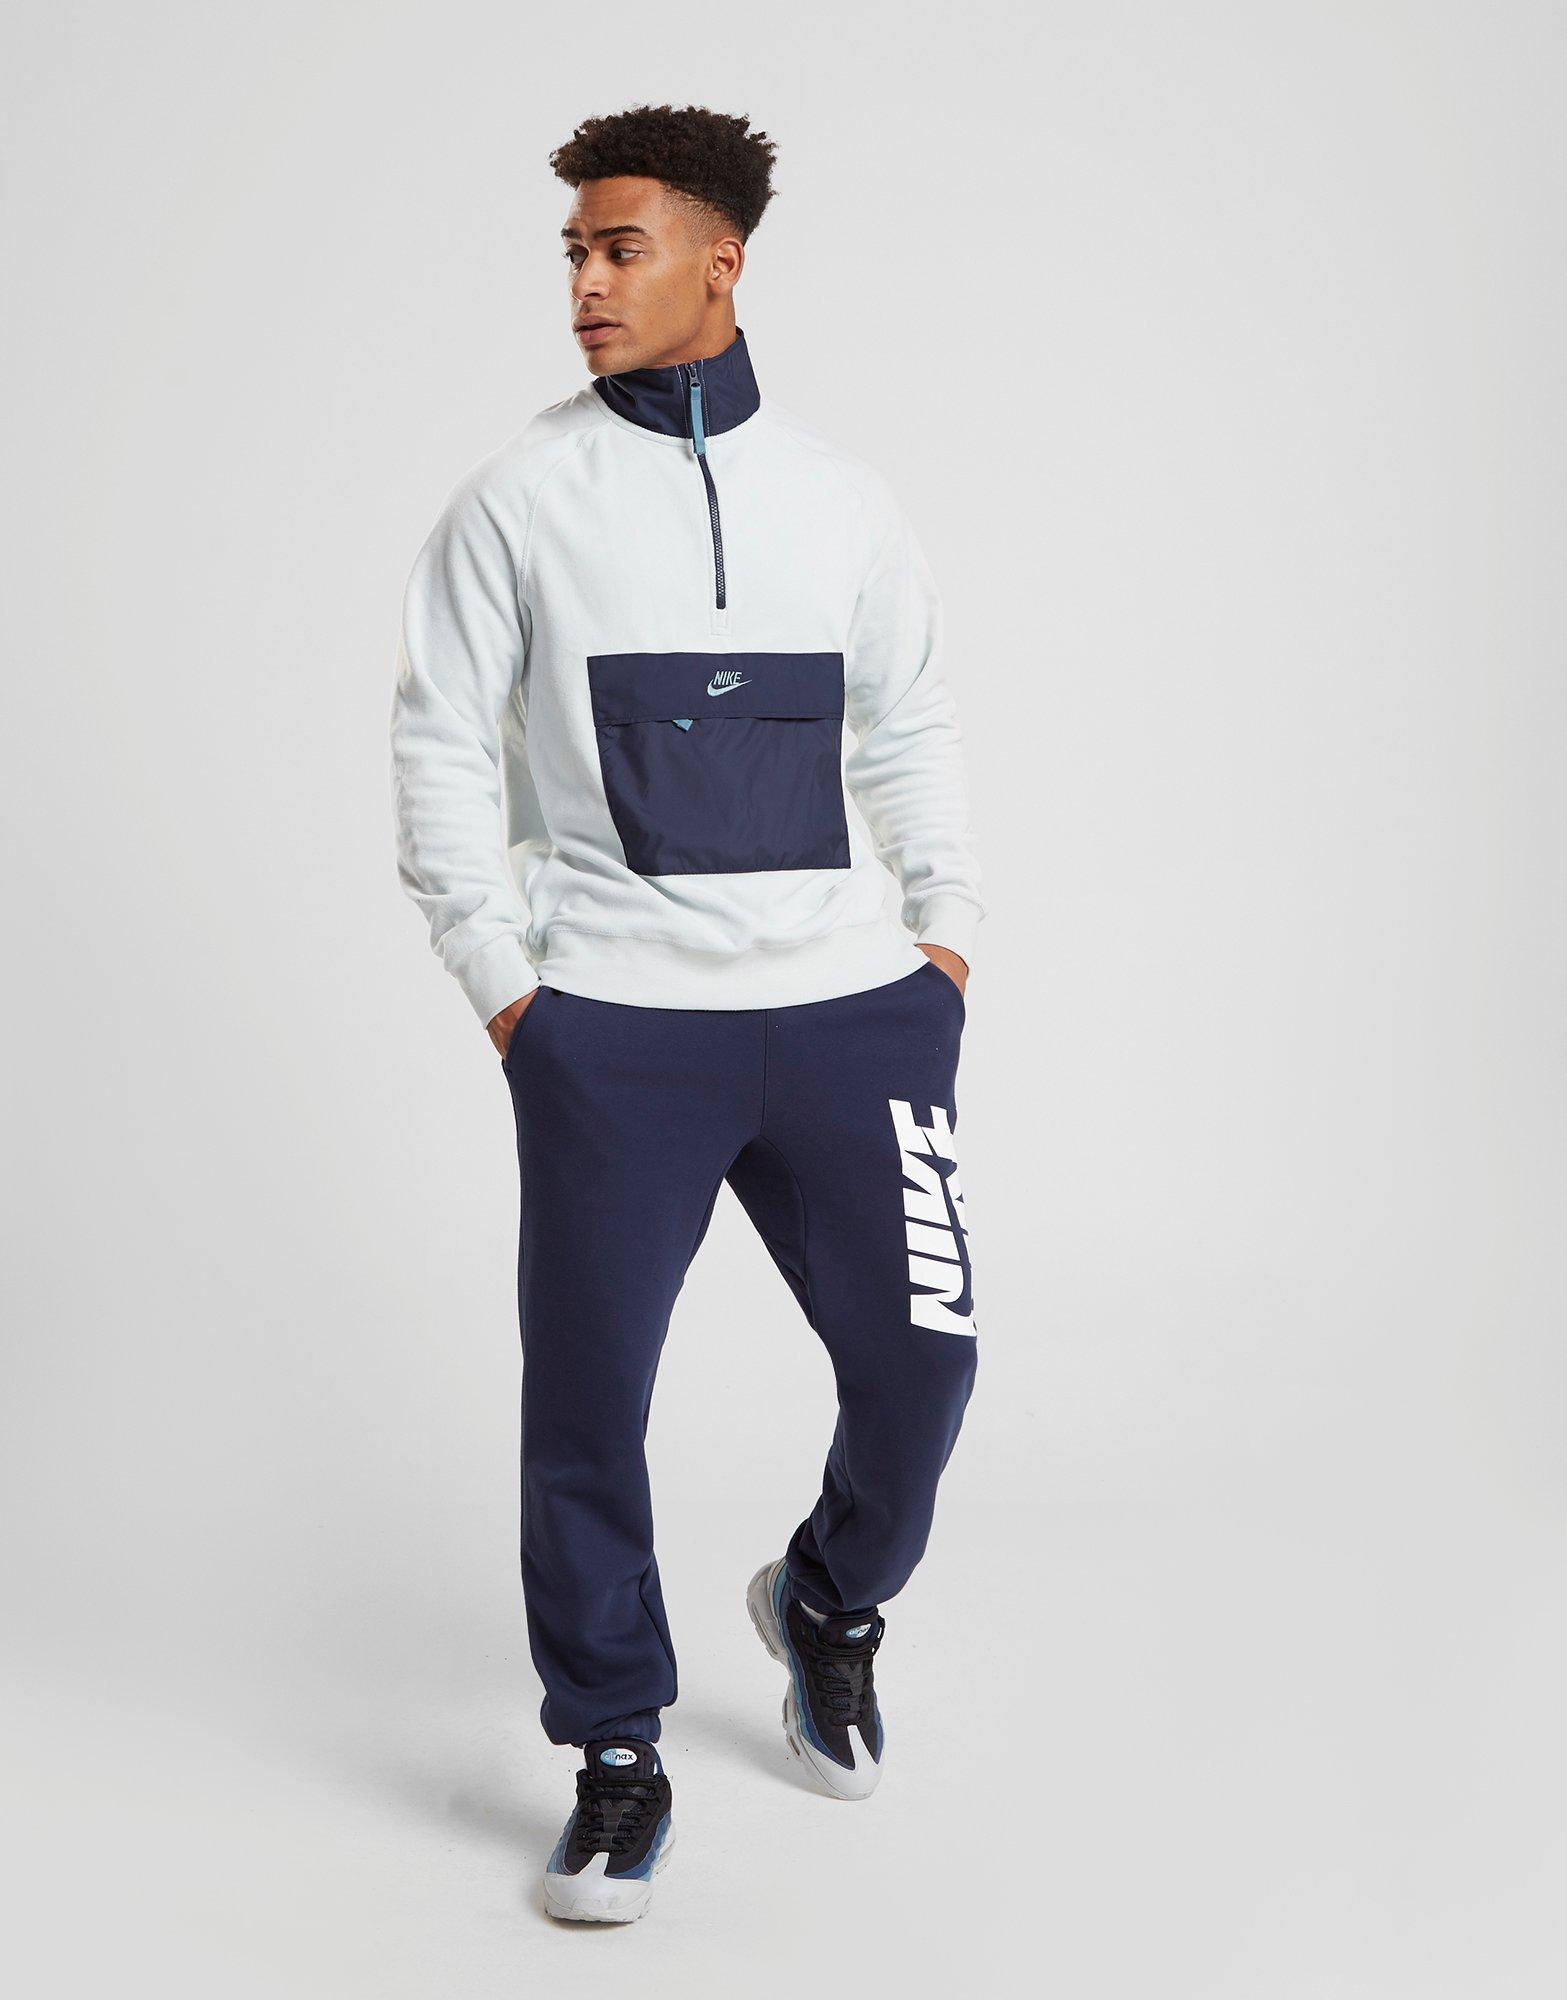 Nike Polar Fleece 1/2 Zip Sweatshirt in White/Blue (Blue) for Men - Lyst